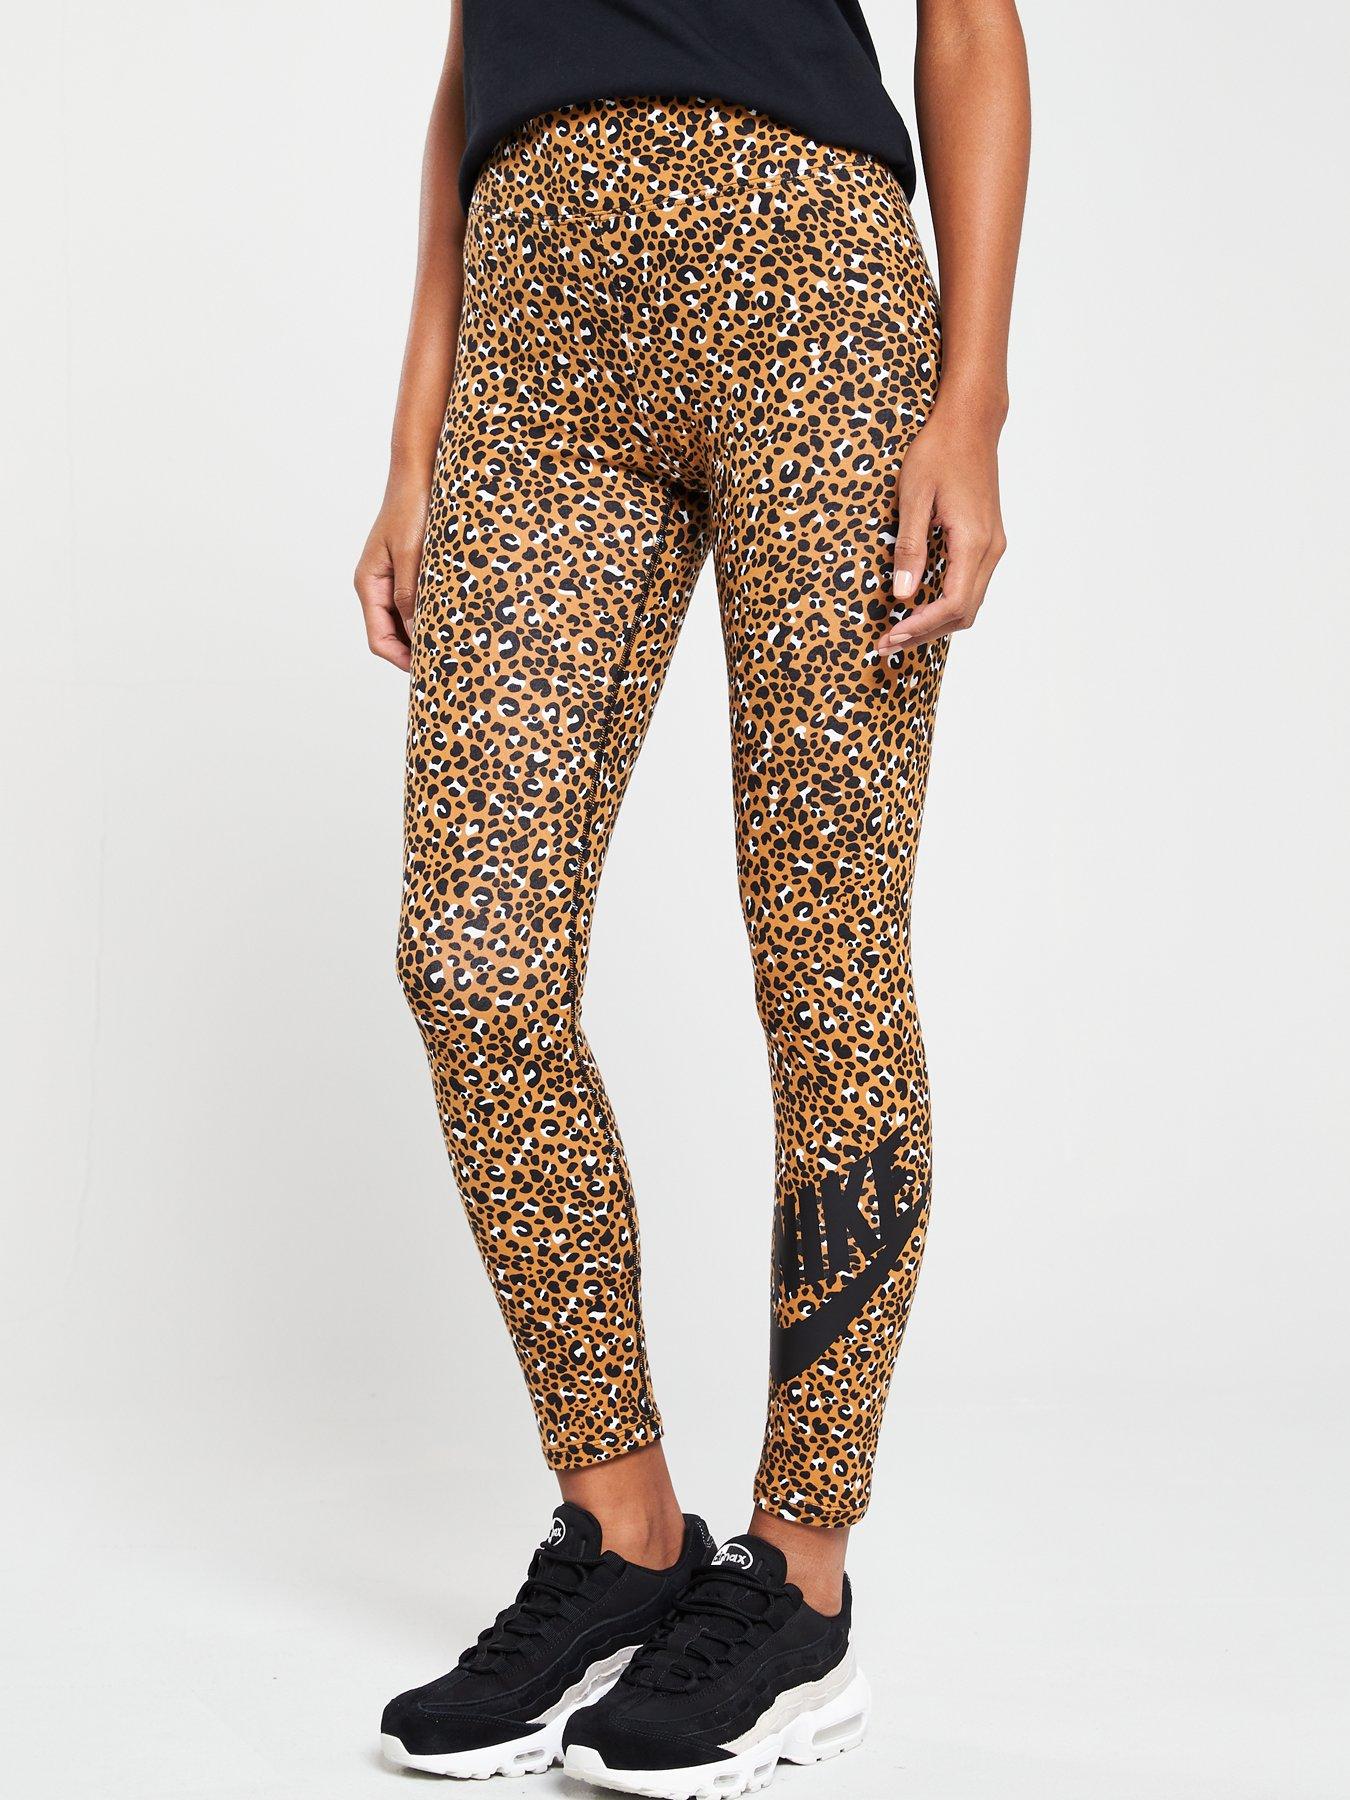 leopard leggings nike